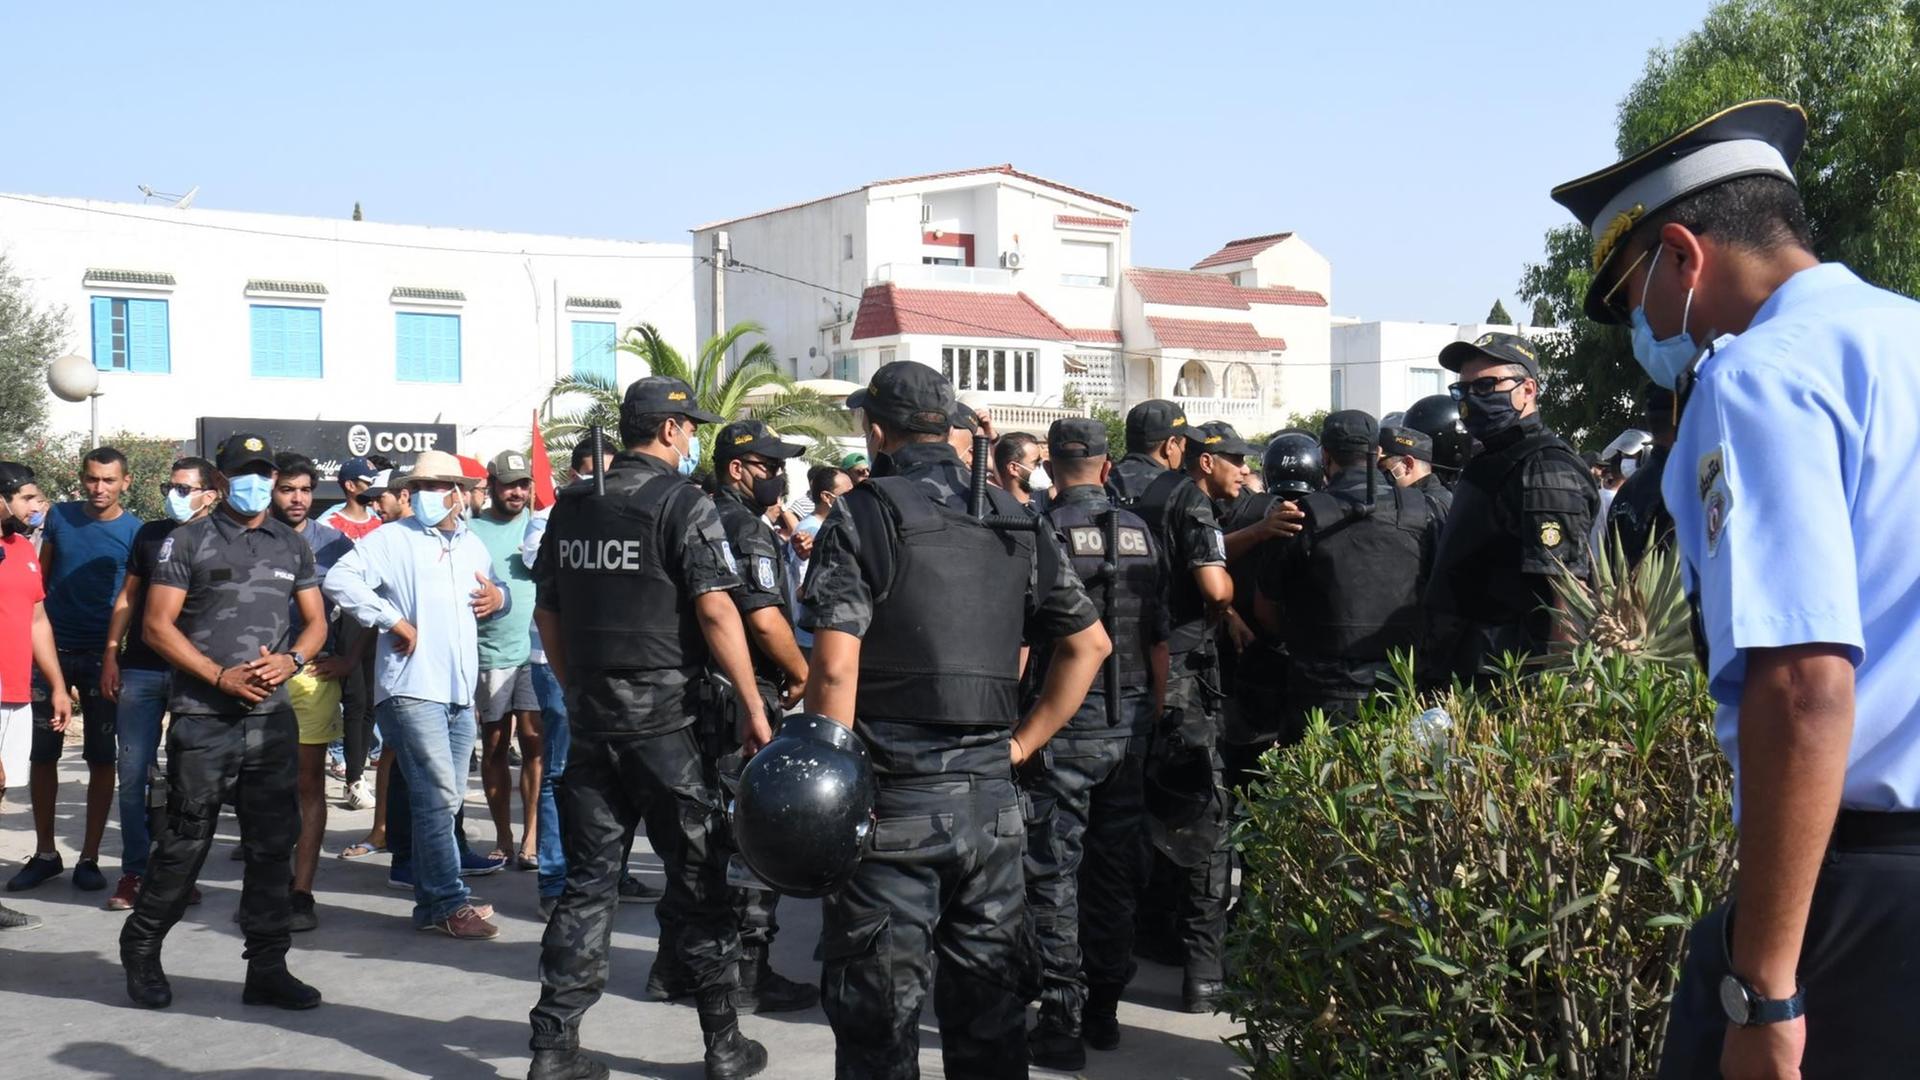 Polizisten in schwarzer Kleidung und Demonstranten stehen auf der Straße.